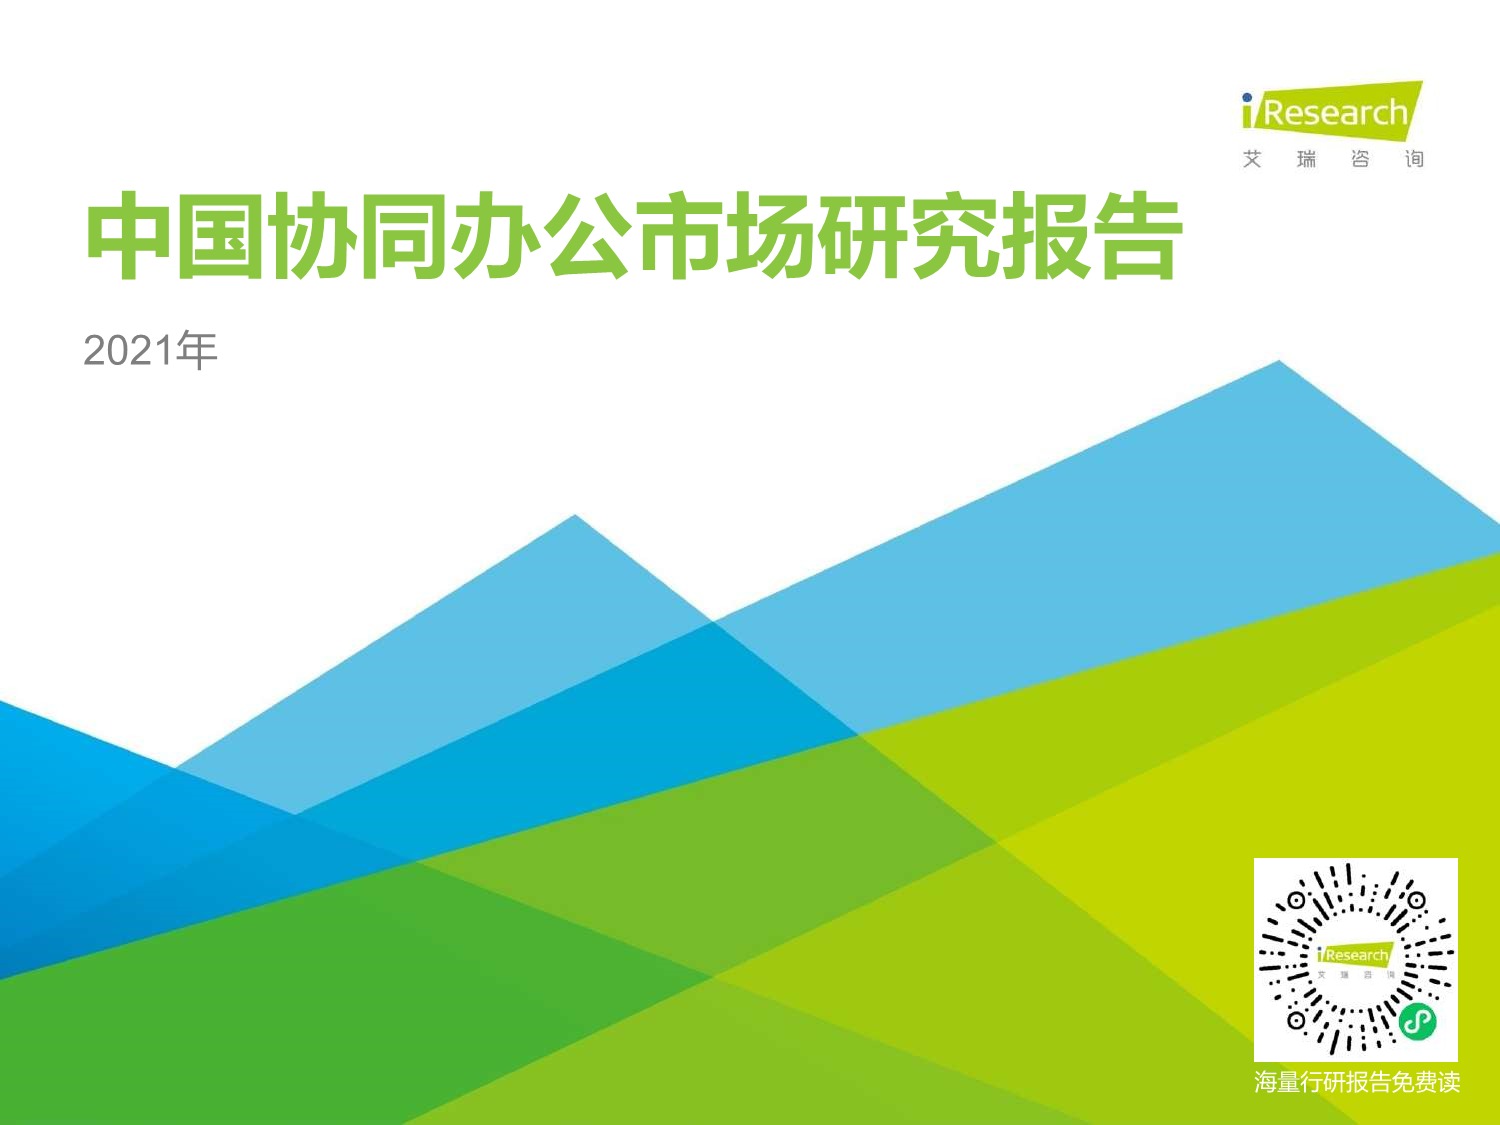 【行业报告】艾瑞咨询-2021年中国协同办公市场研究报告